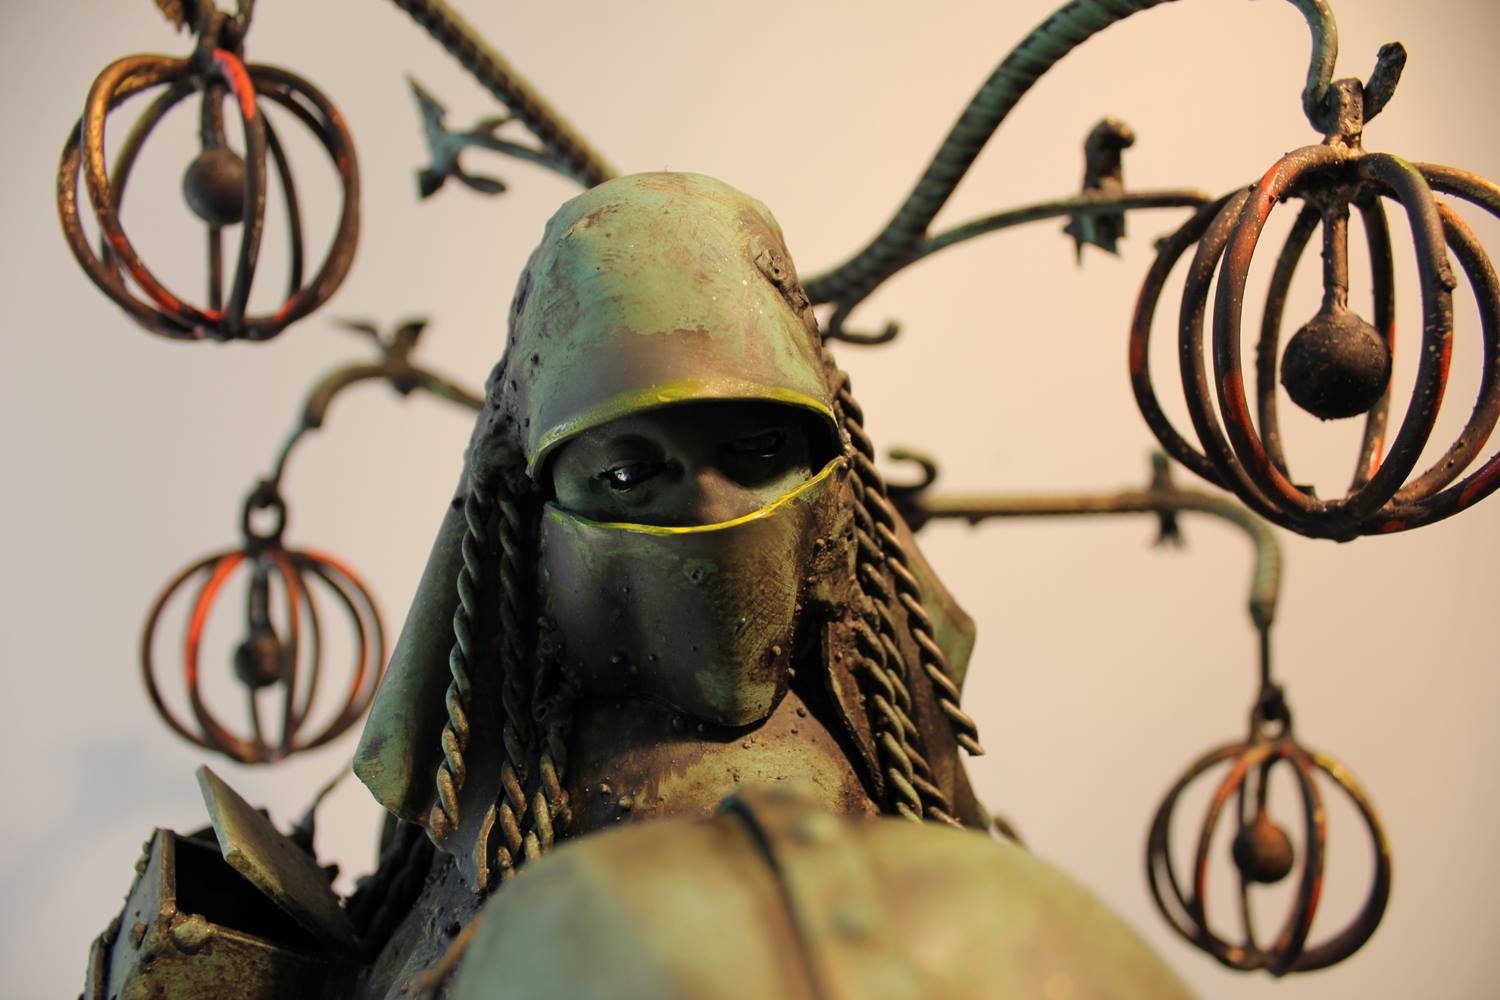 Guillermo Rigattieri – Steampunk sculptures